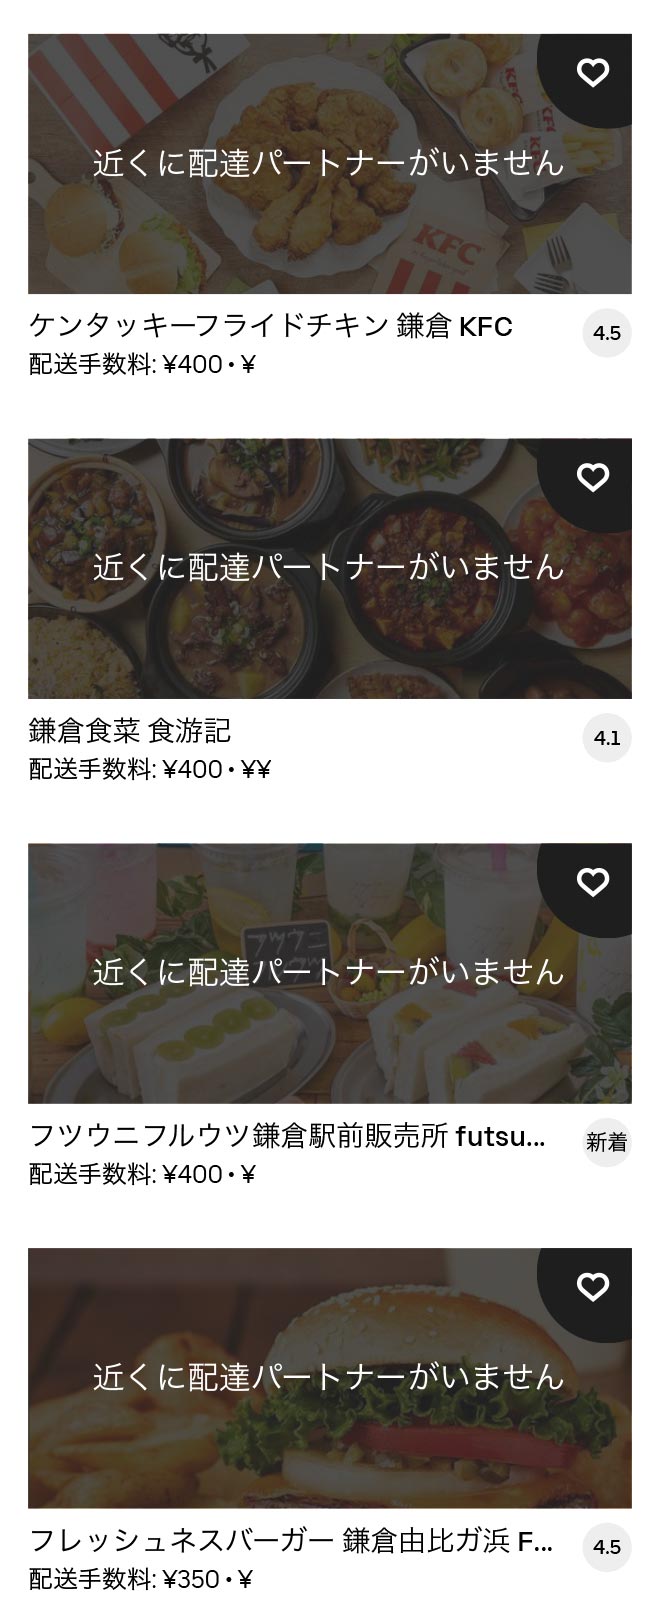 Zushi menu 2012 08